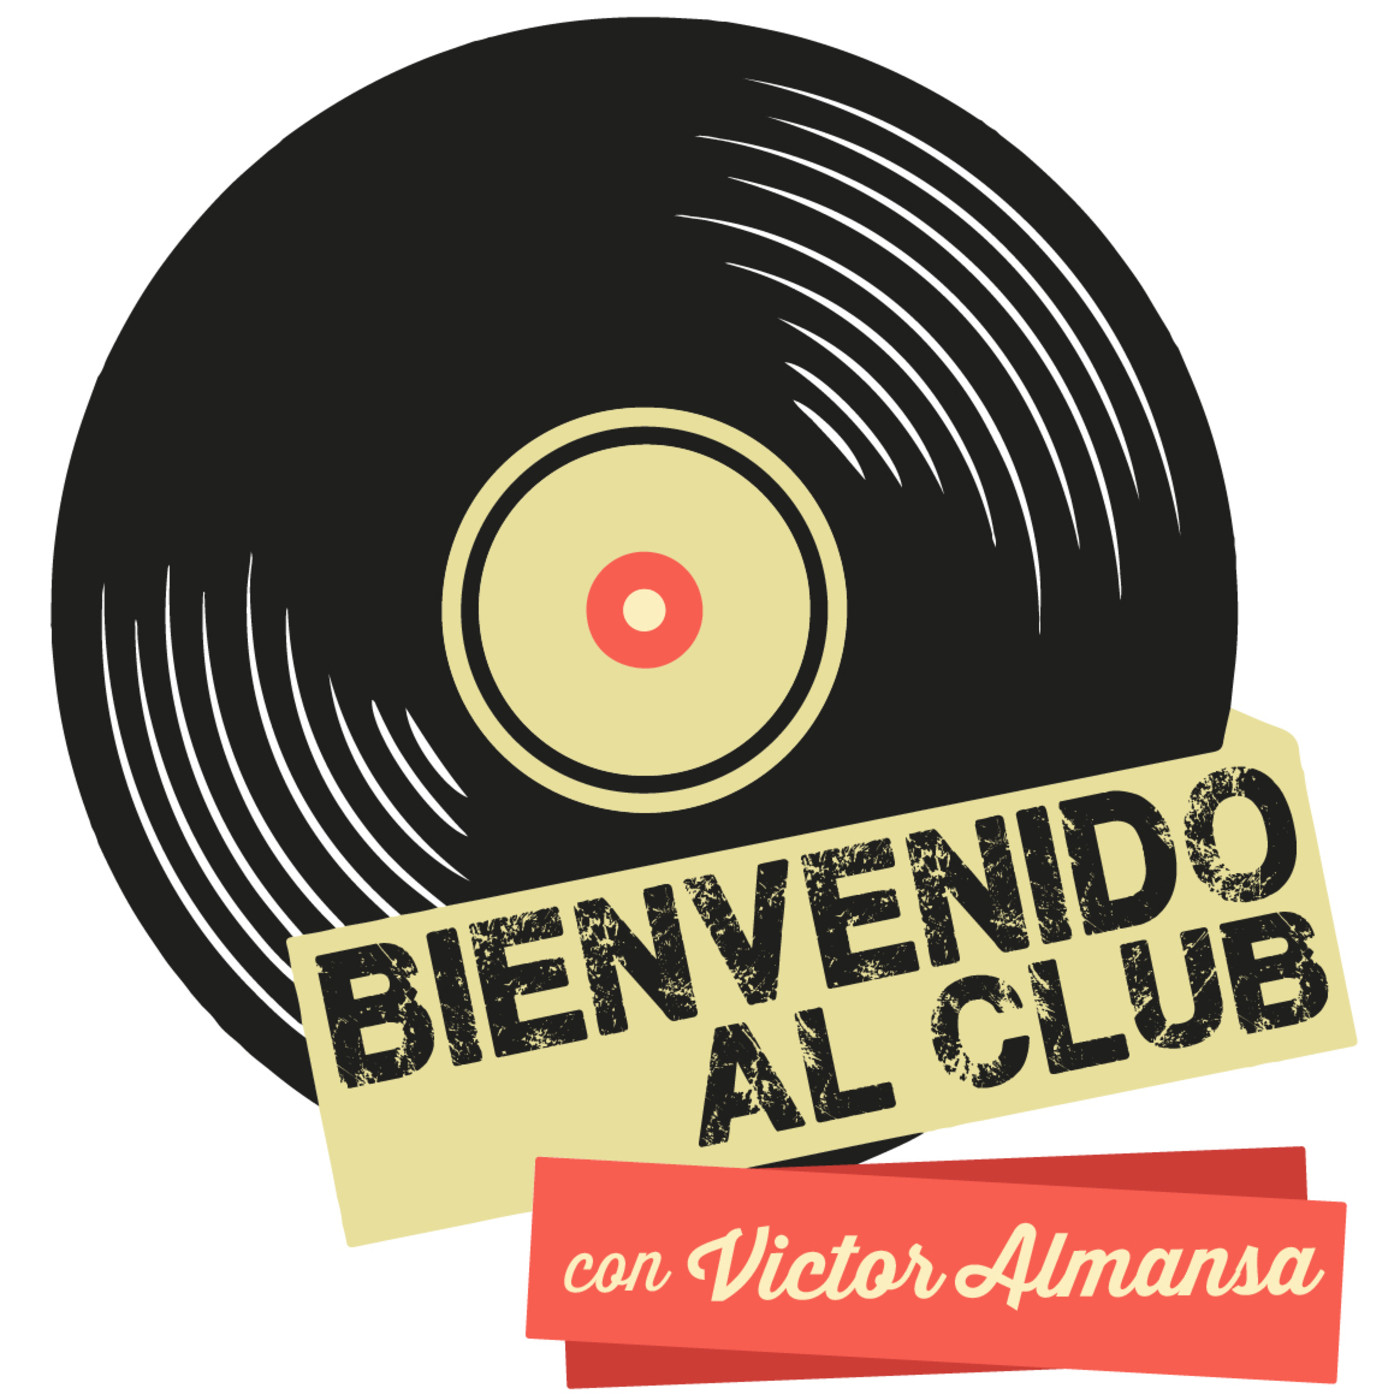 Bienvenido al Club con Victor Almansa (Miercoles 20 de Noviembre 2019)